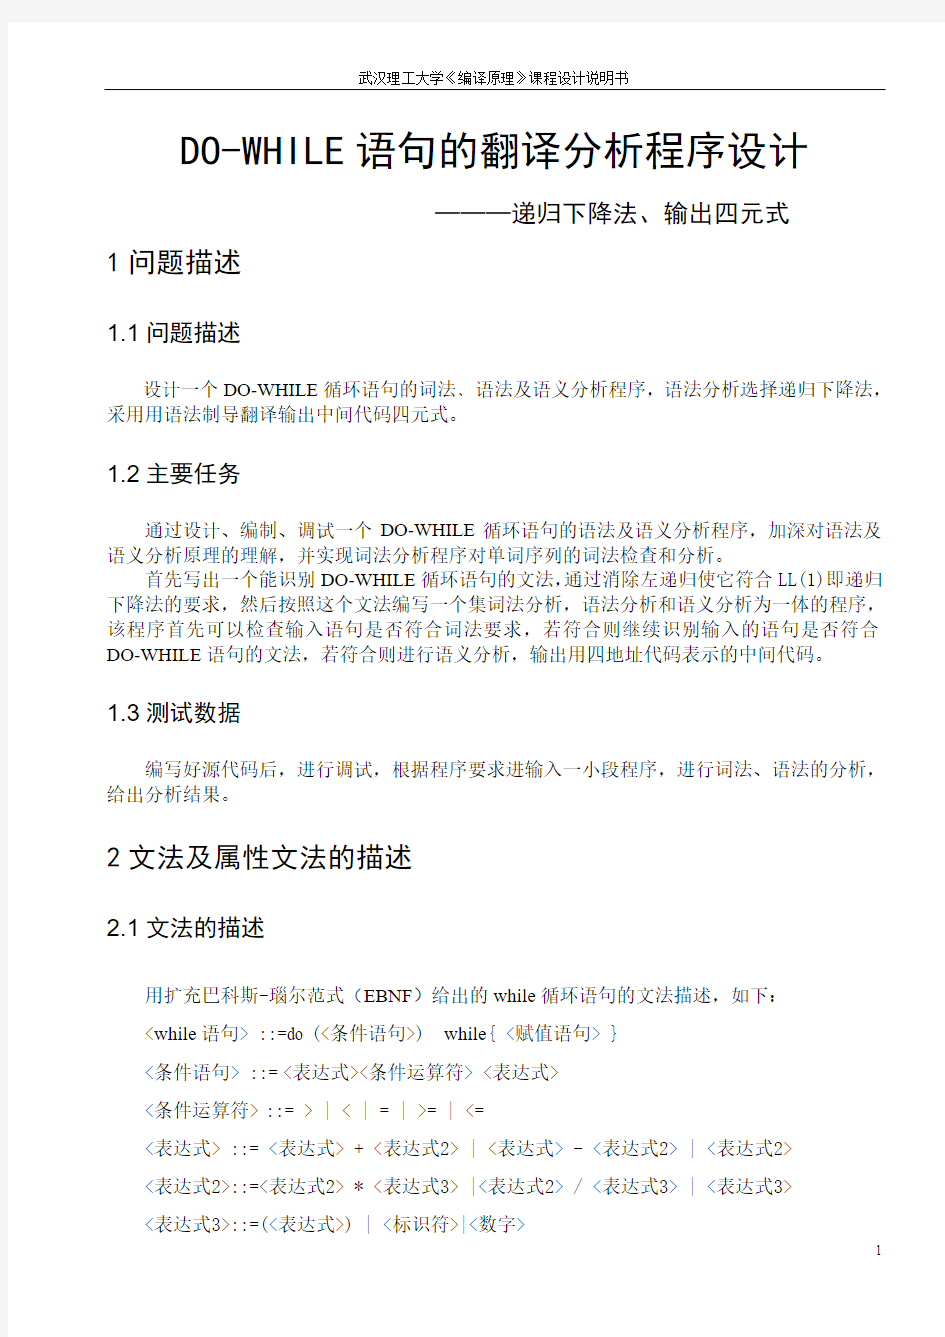 武汉理工大学 DO-WHILE语句的翻译分析程序设计 ———递归下降法、输出四元式